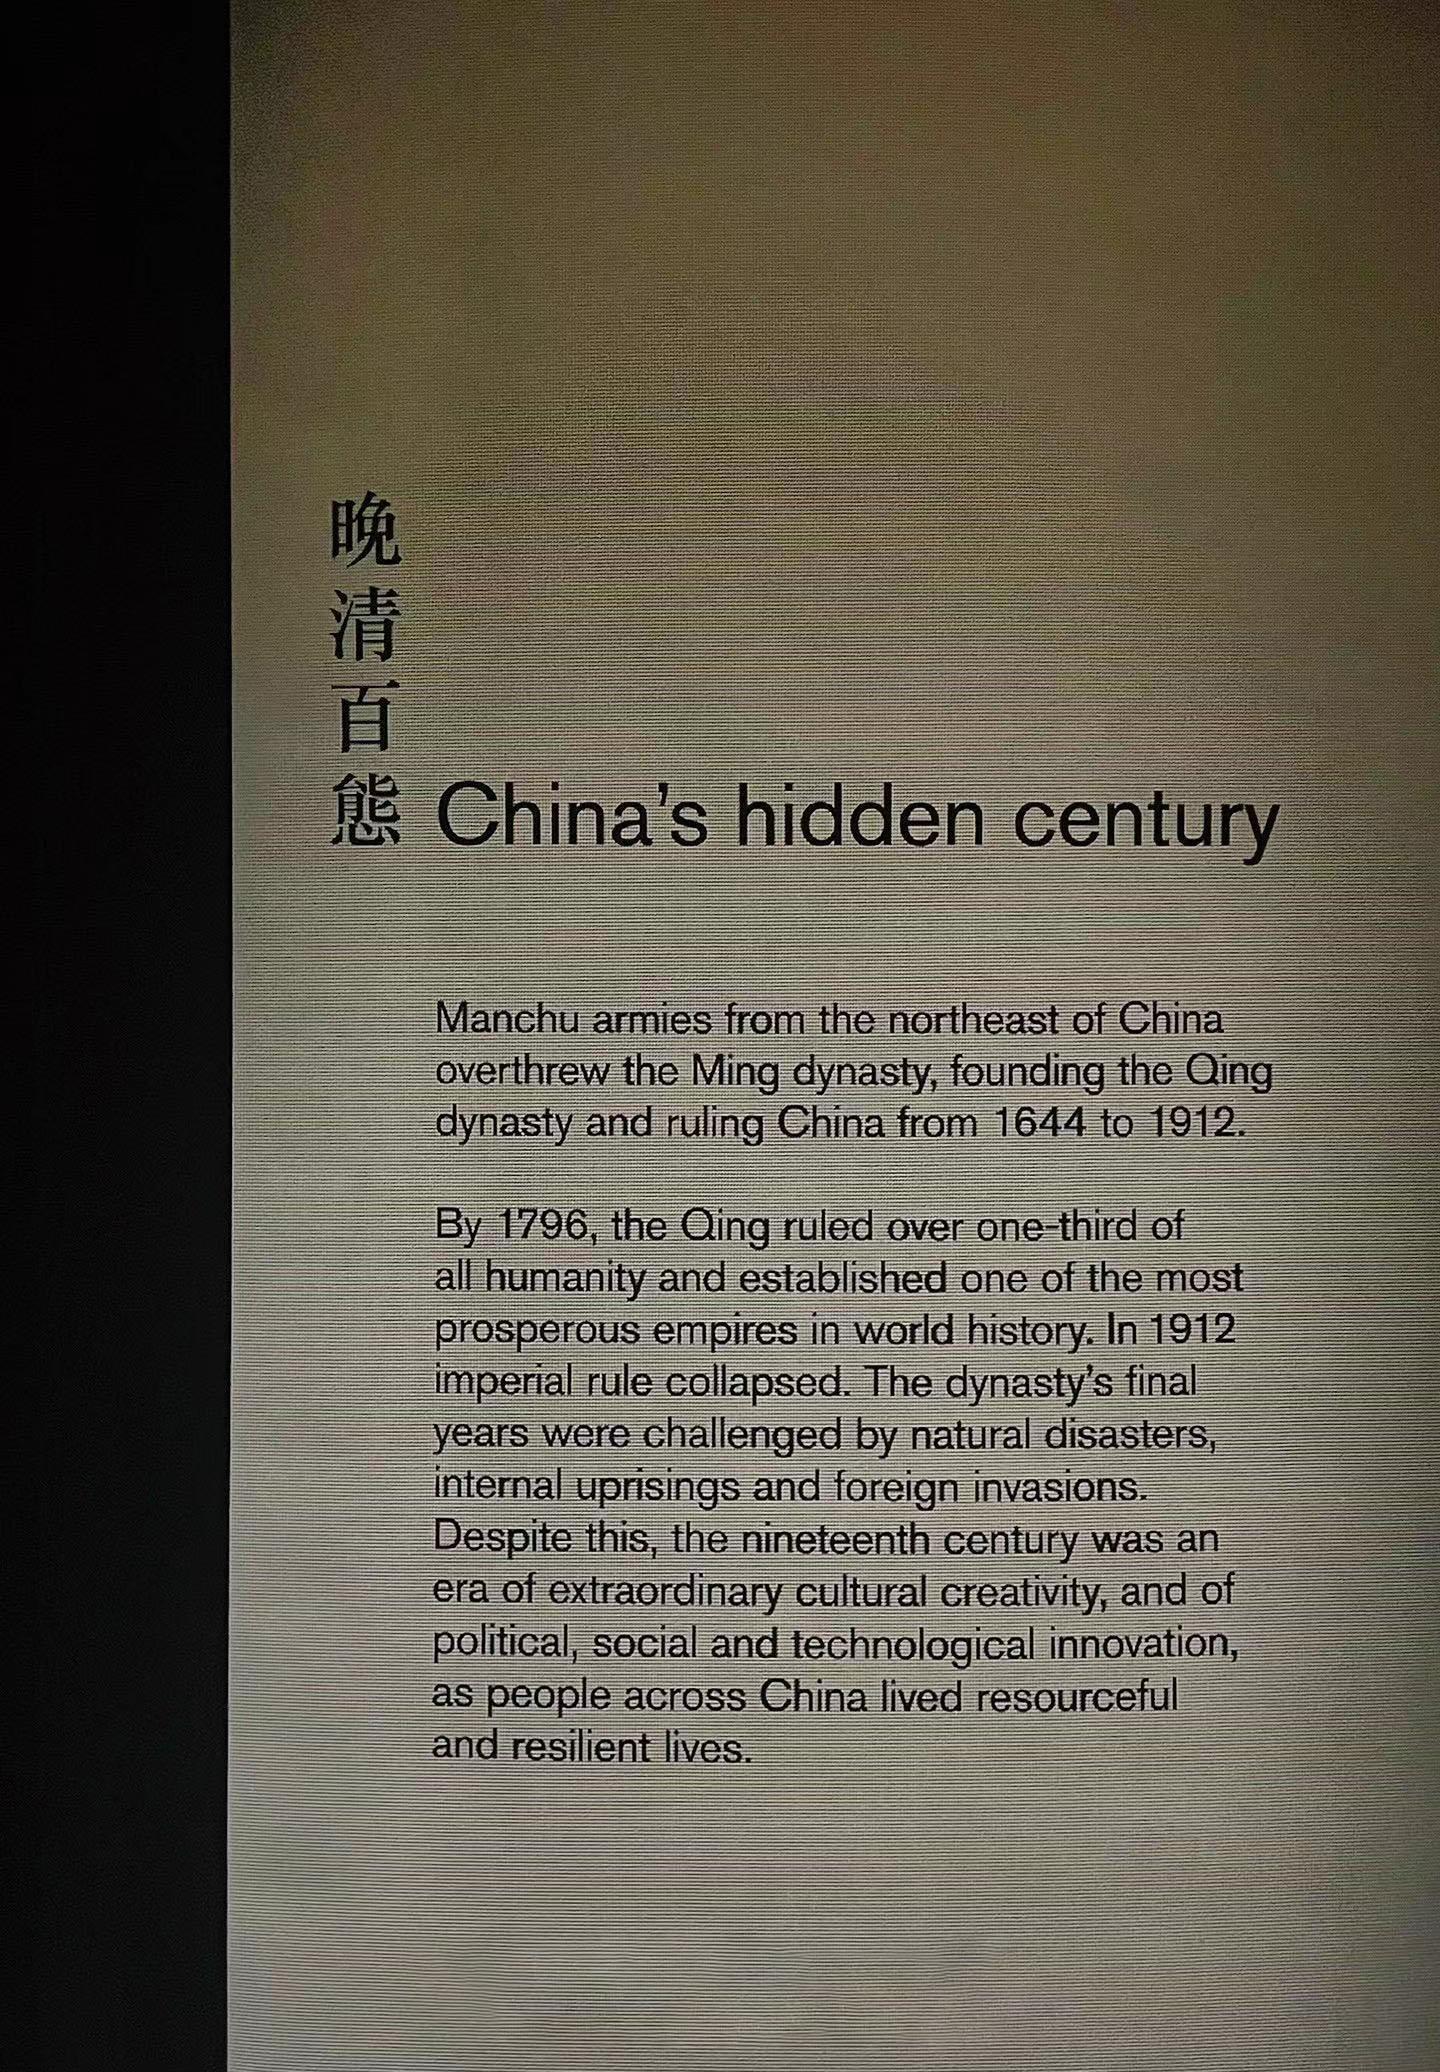 大英博物馆有多少中国文物?大英博物馆特展:晚清百态